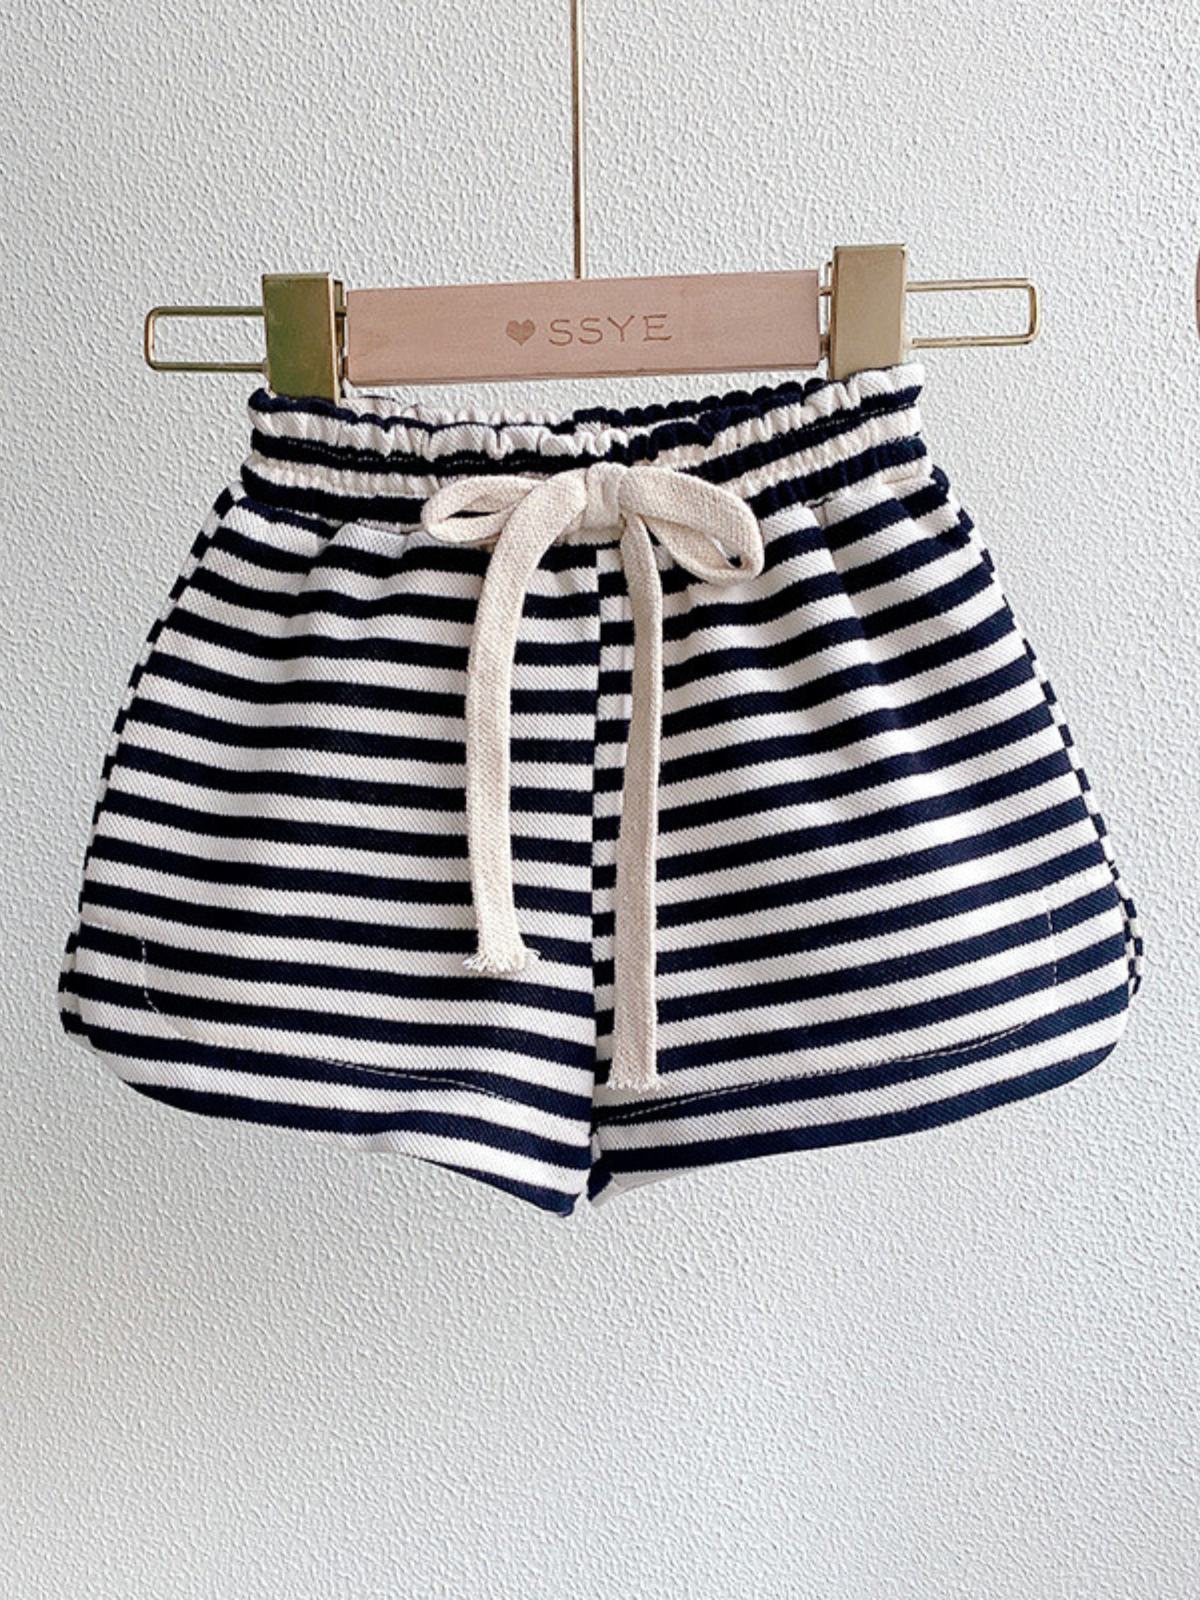 Mia Belle Girls Black Striped Top & Shorts Set | Resort Wear